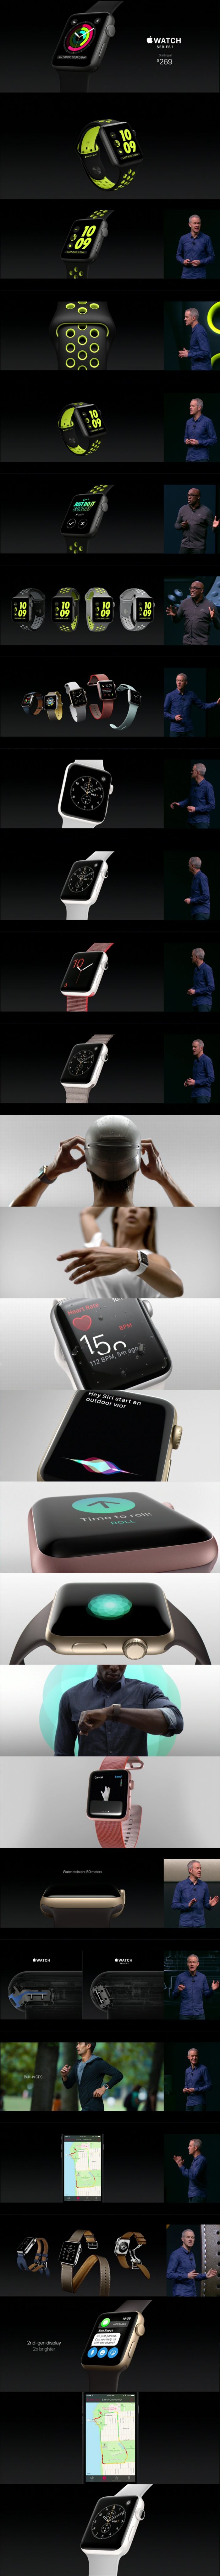 Megjelent az Apple Watch Series 2